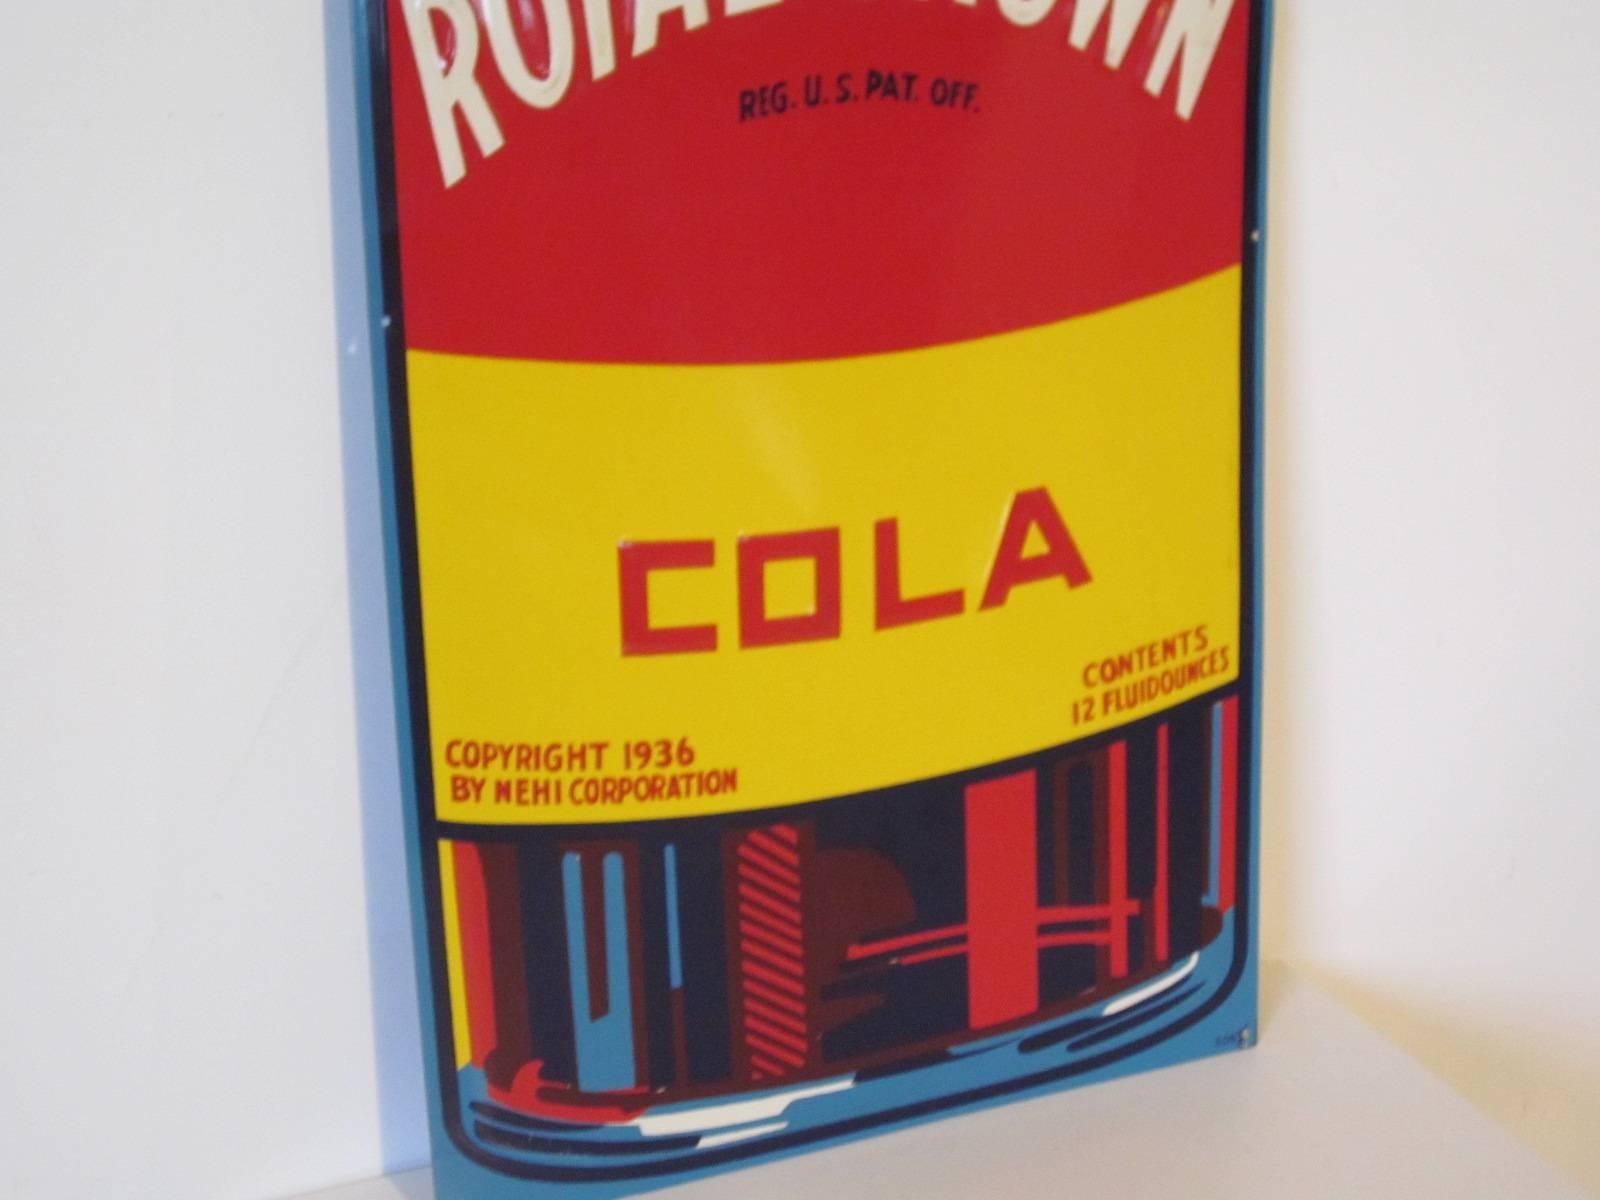 1960s rc cola bottle